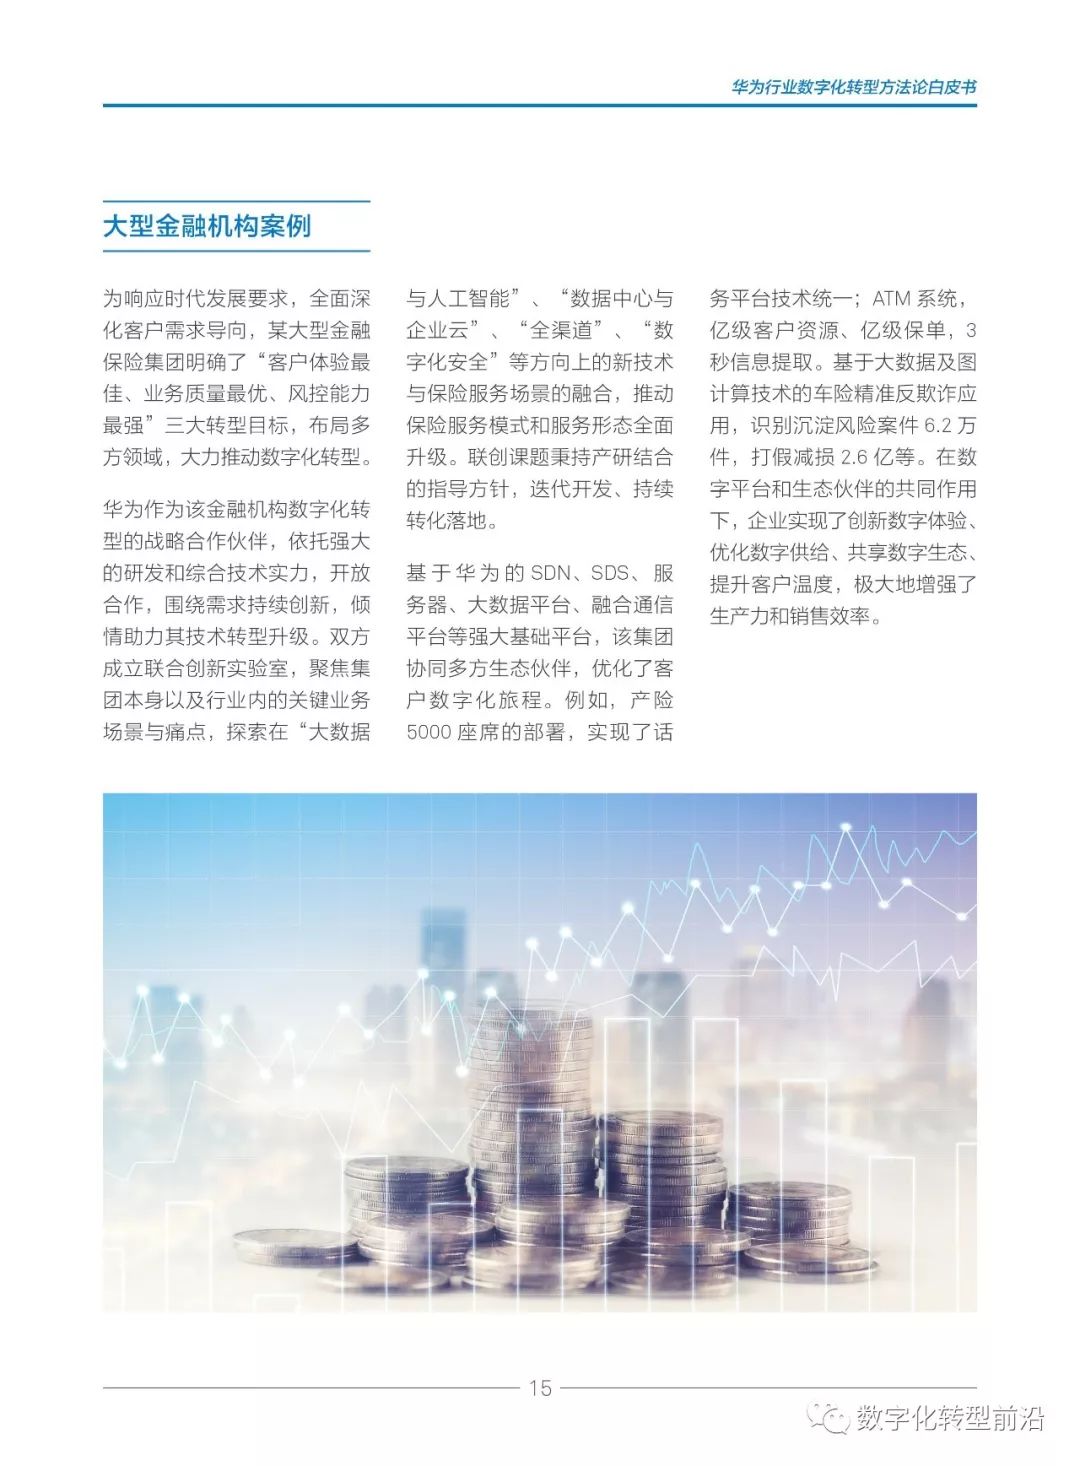 华为《行业数字化转型方法论白皮书2019》下载及全文在线阅读